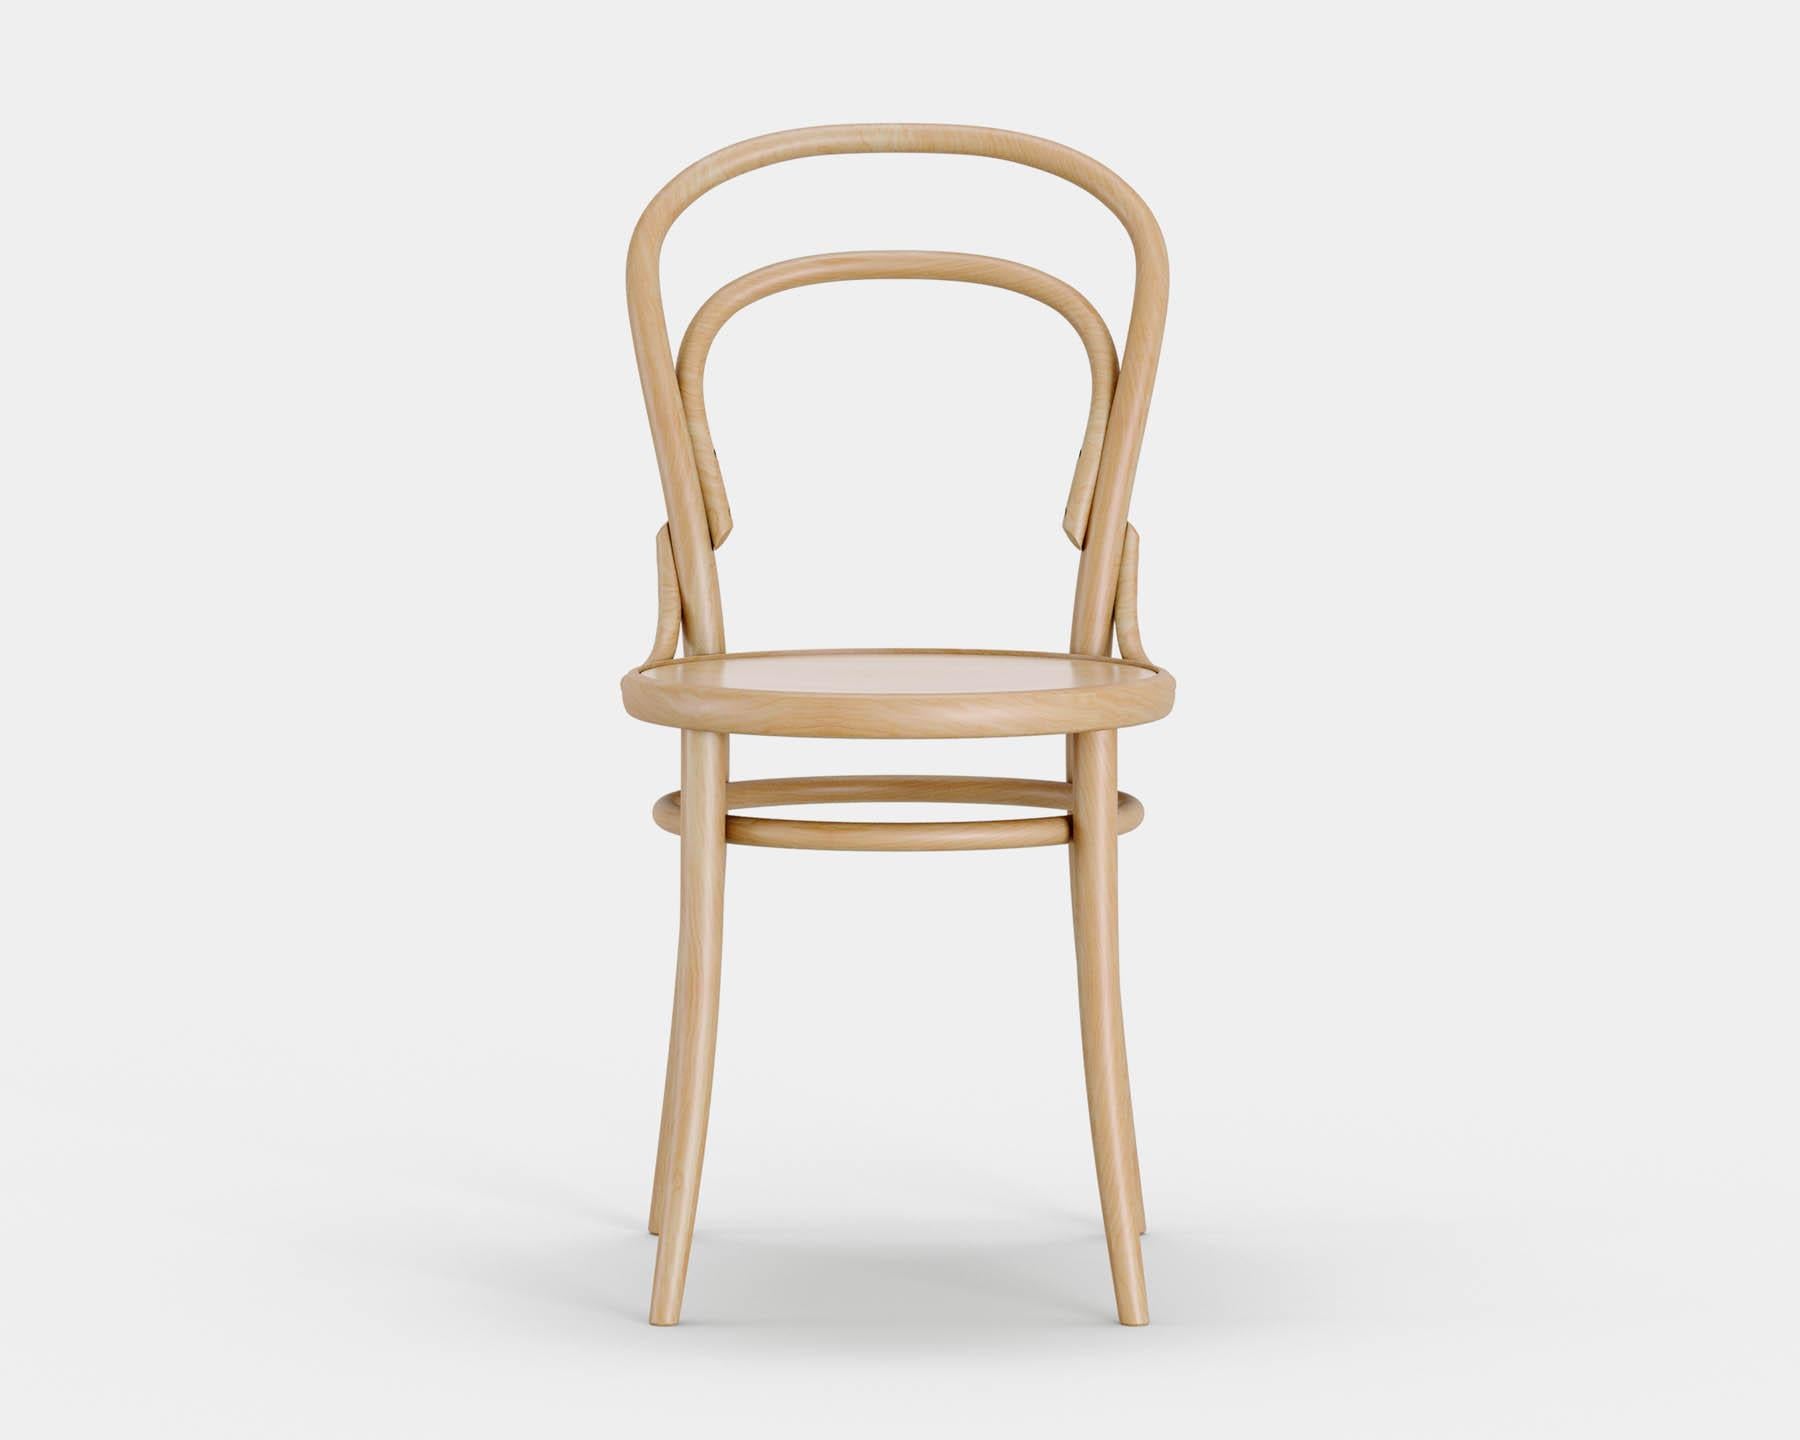 Chaise n° 14
Chaise de bistrot iconique conçue par Michael Thonet en 1869, aujourd'hui produite dans la même manufacture en République tchèque par TON. 

Bois : hêtre massif 
Nature : lumière naturelle 
Assise : bois simple 

--
La chaise no. 14 de